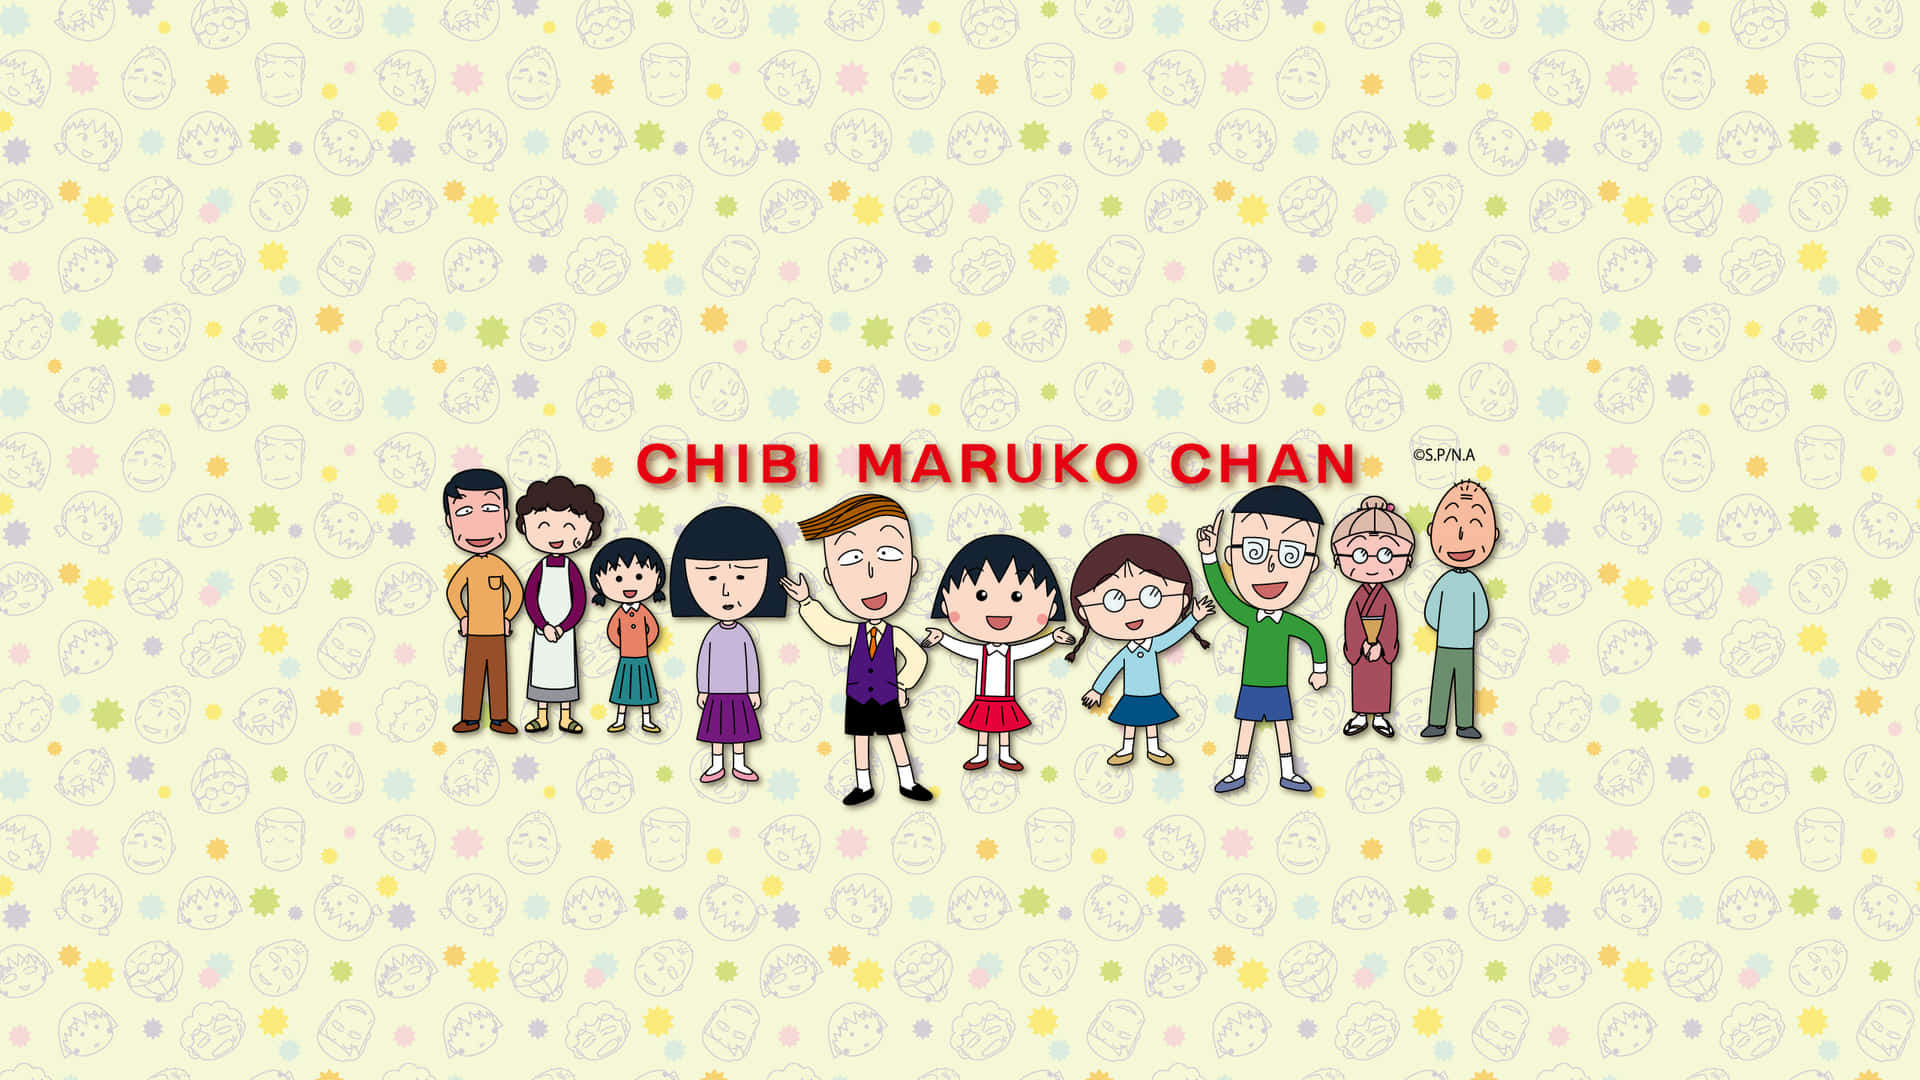 Baggrundmed Chibi Maruko Chan.